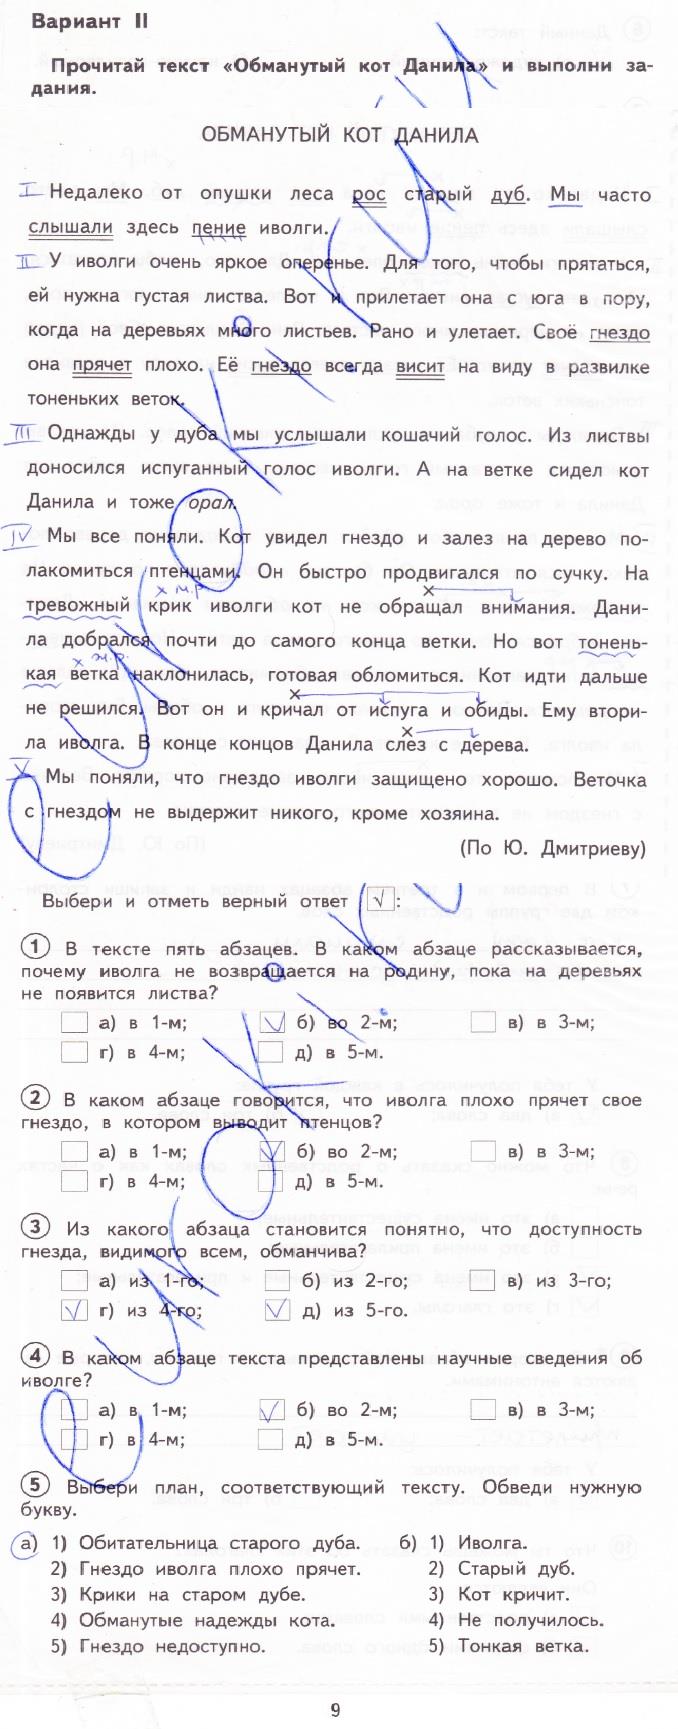 гдз 3 класс тетрадь для проверочных работ страница 9 русский язык Лаврова